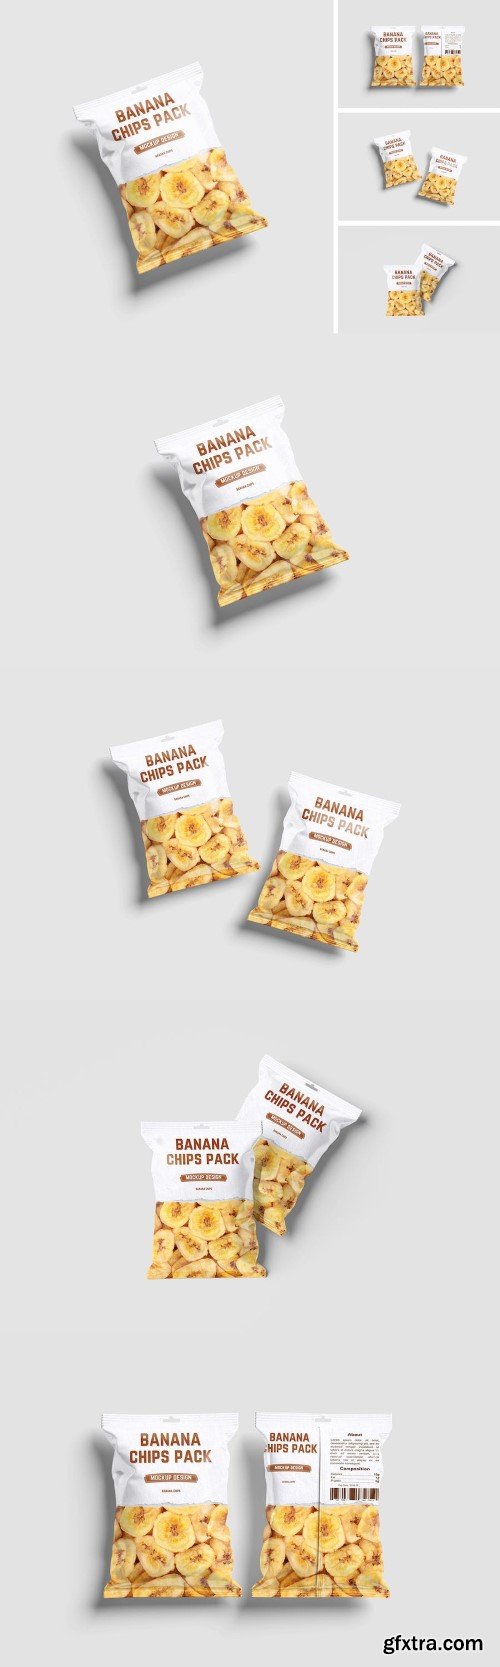 Snack Packaging mockup